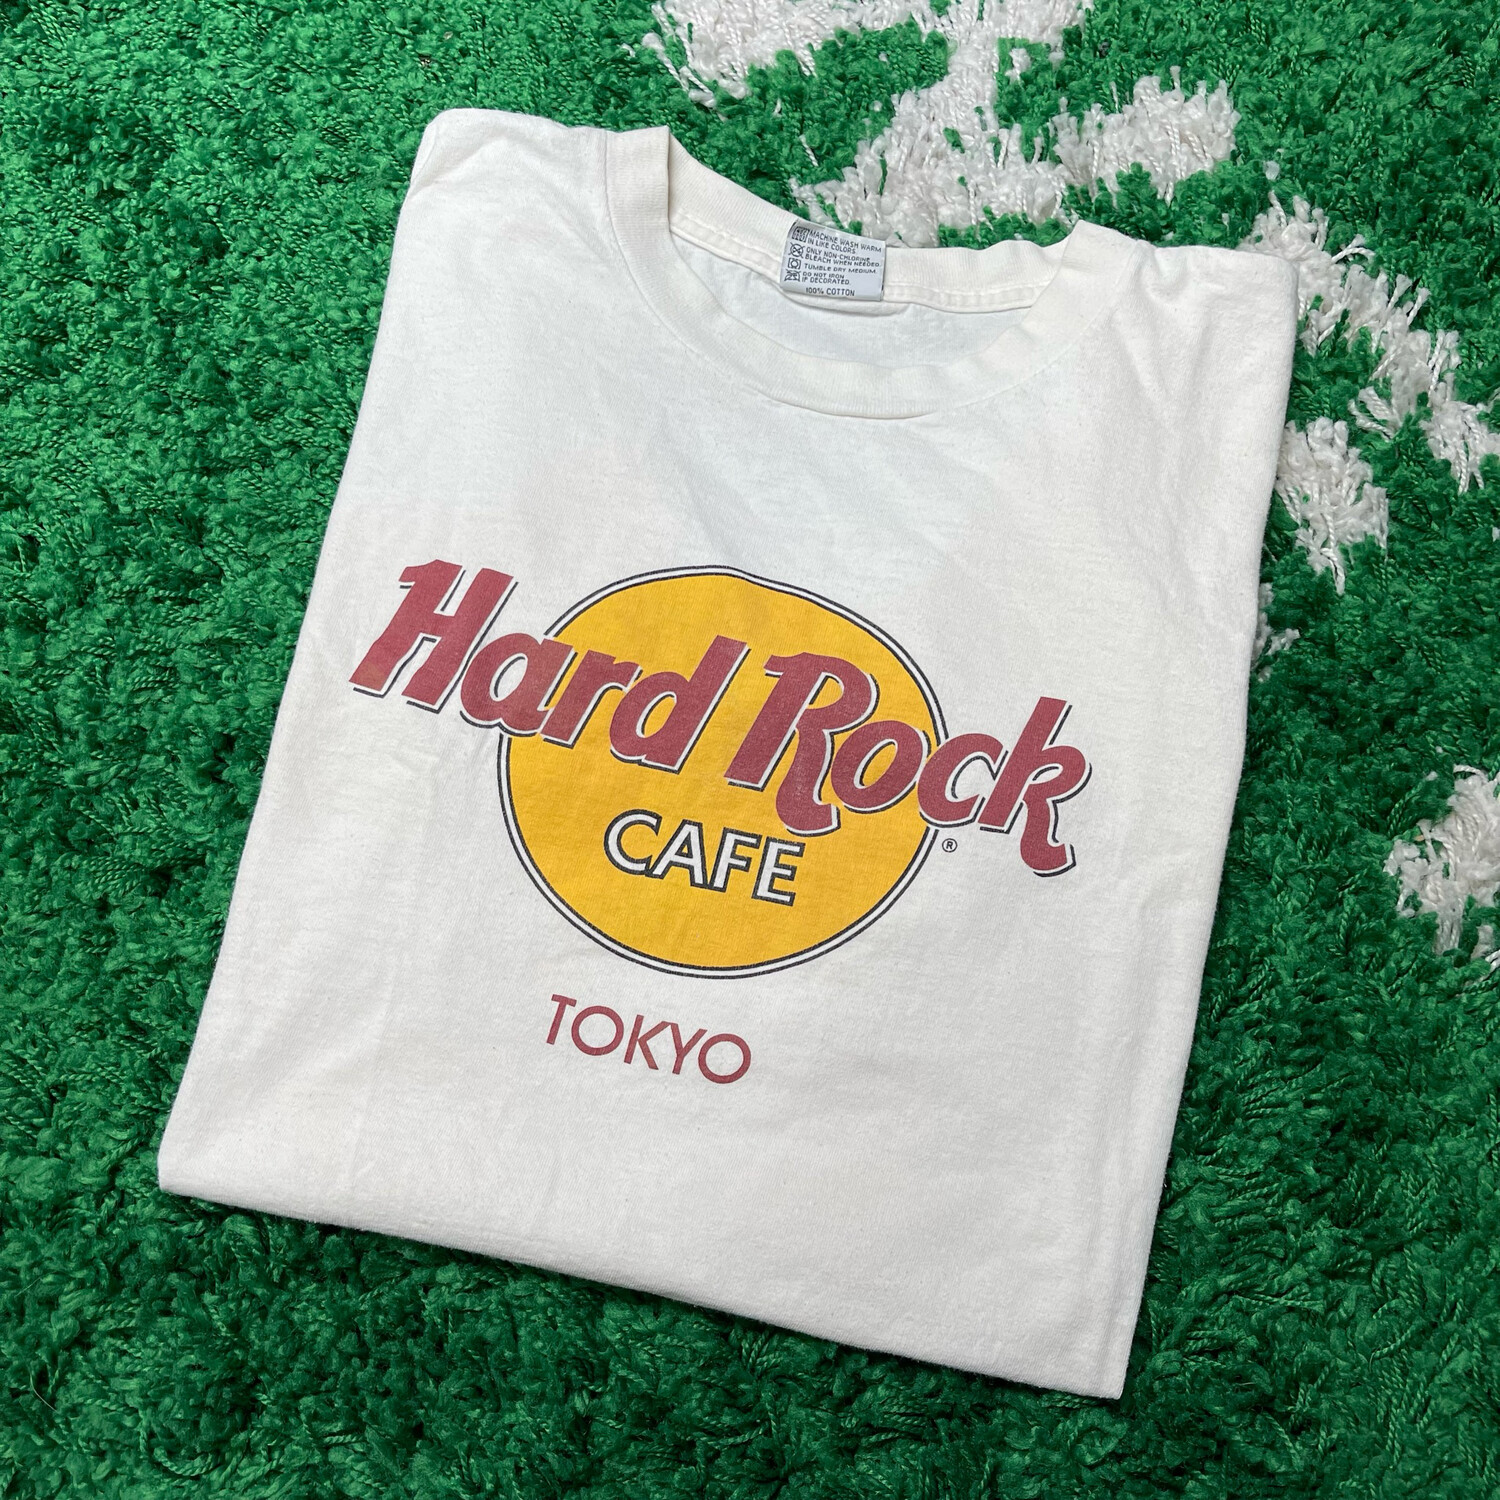 Hard Rock Cafe Tokyo Tee Size Large